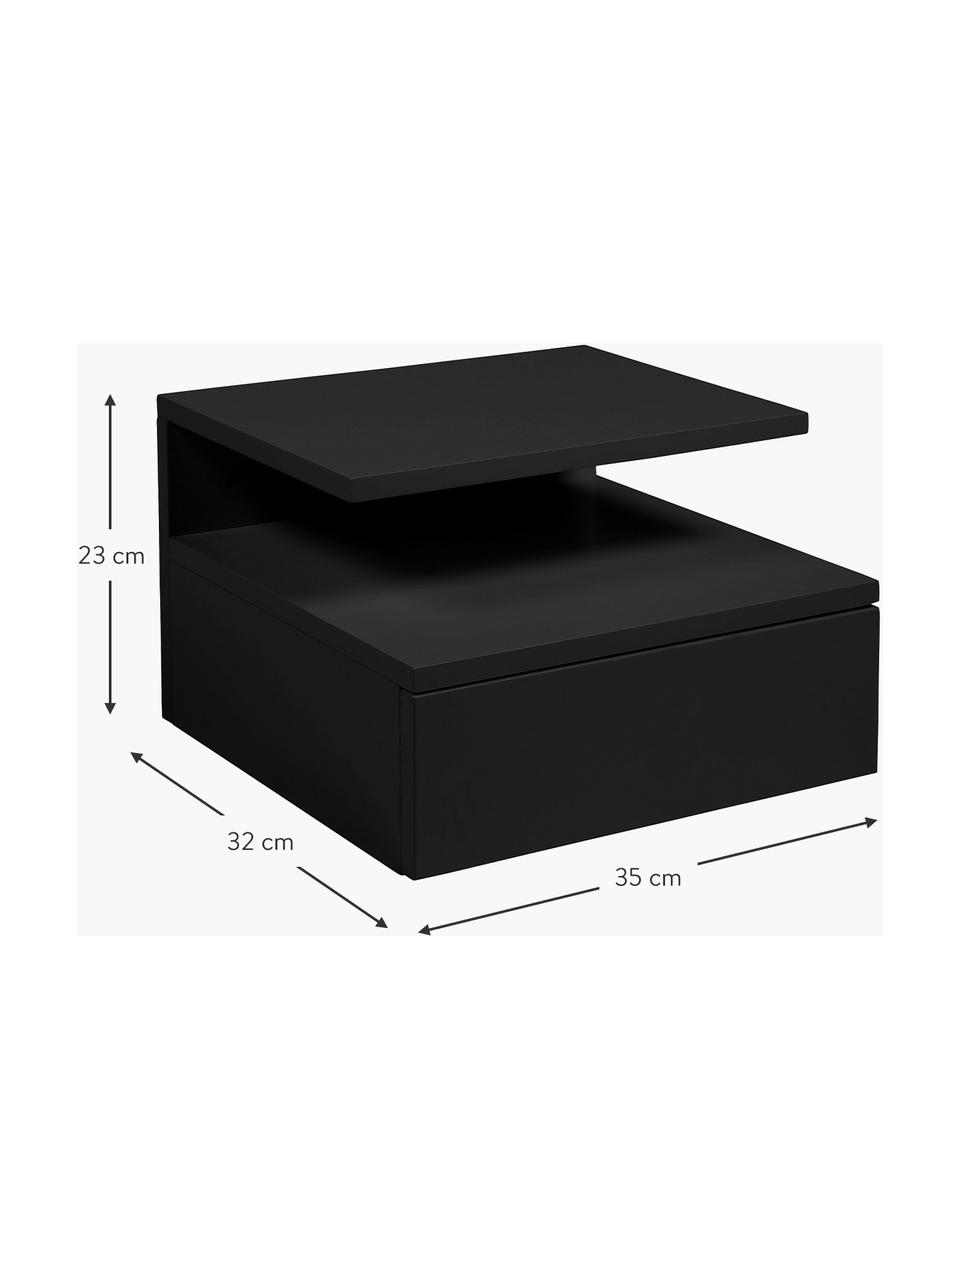 Nástěnný noční stolek Ashlan, Lakovaná MDF deska (dřevovláknitá deska střední hustoty), Černá, Š 35 cm, V 23 cm